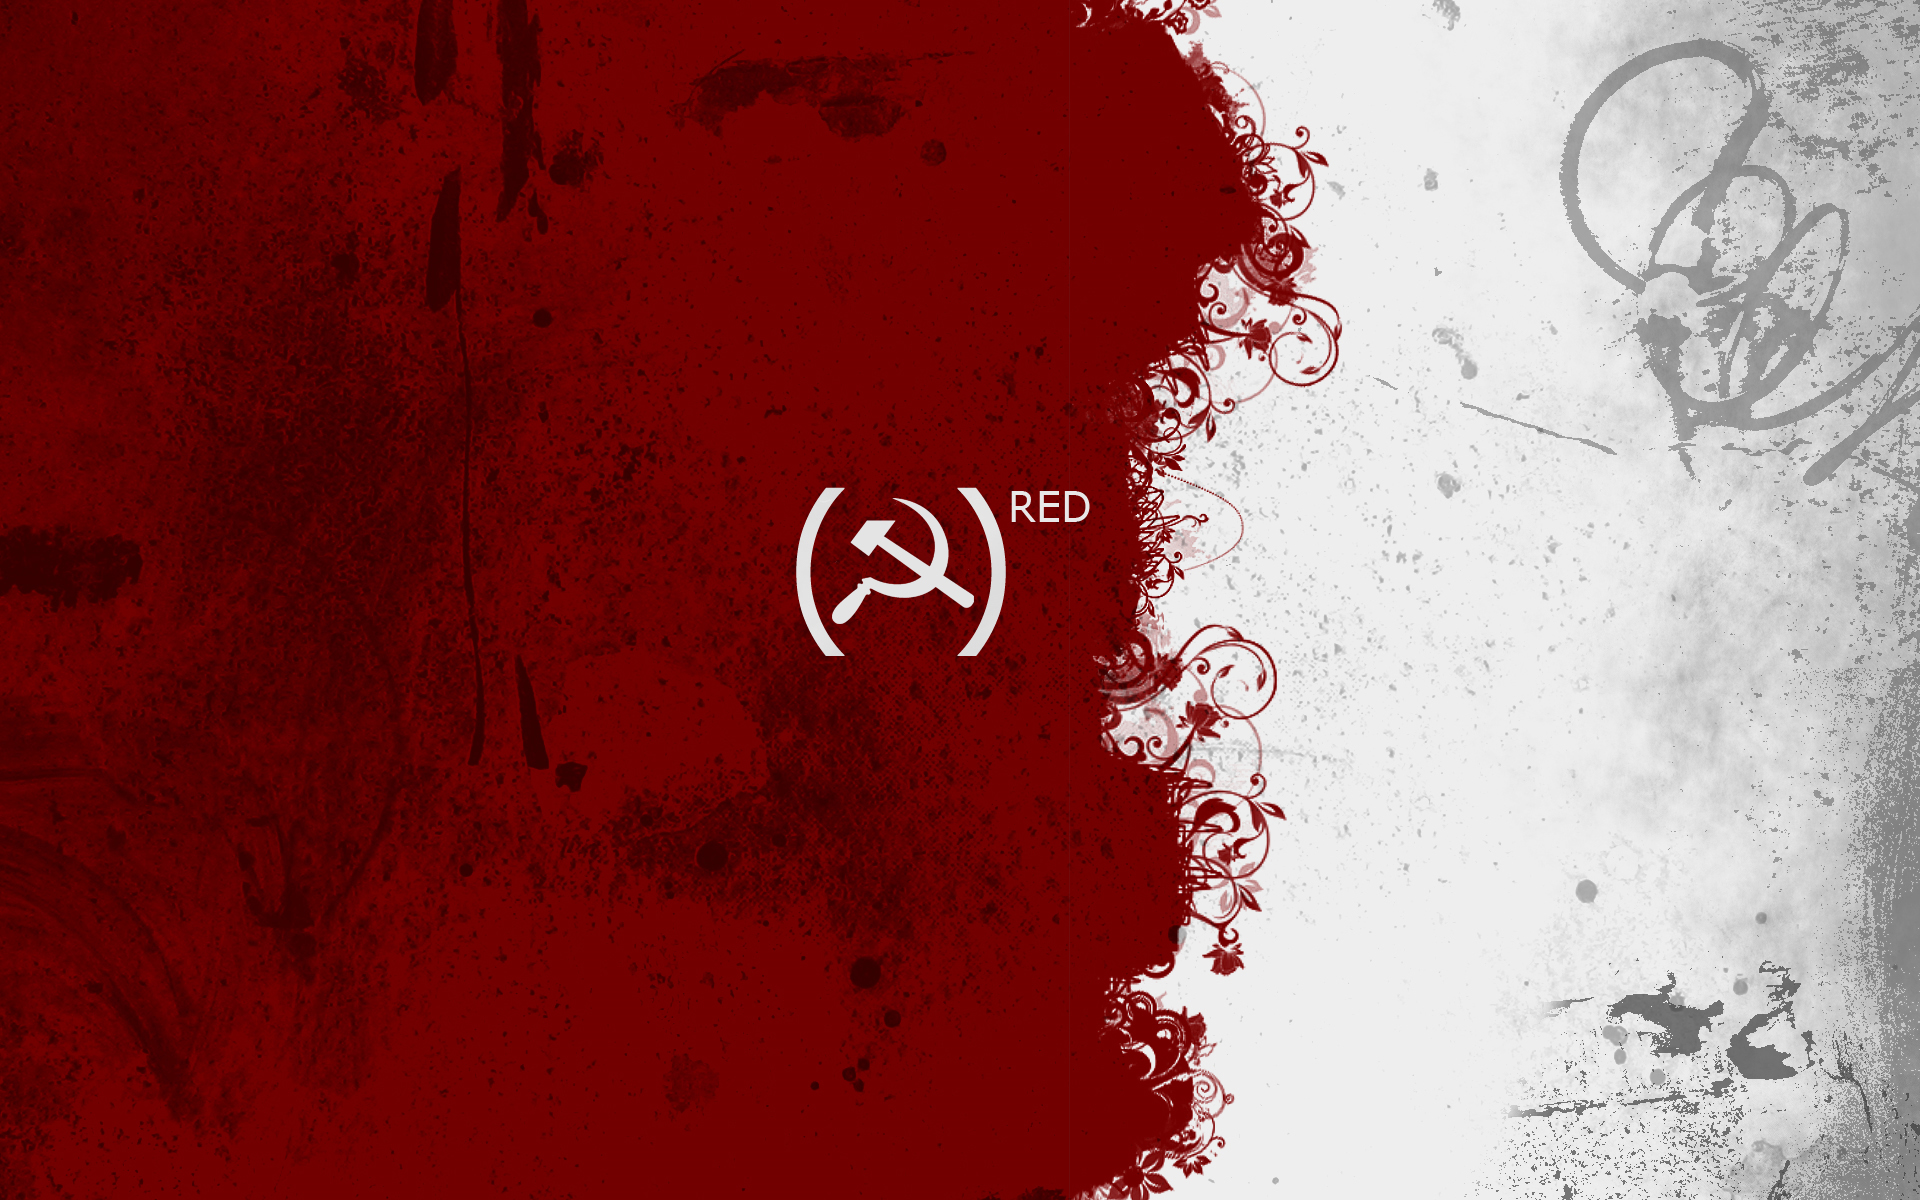 The Propaganda Red Wallpaper